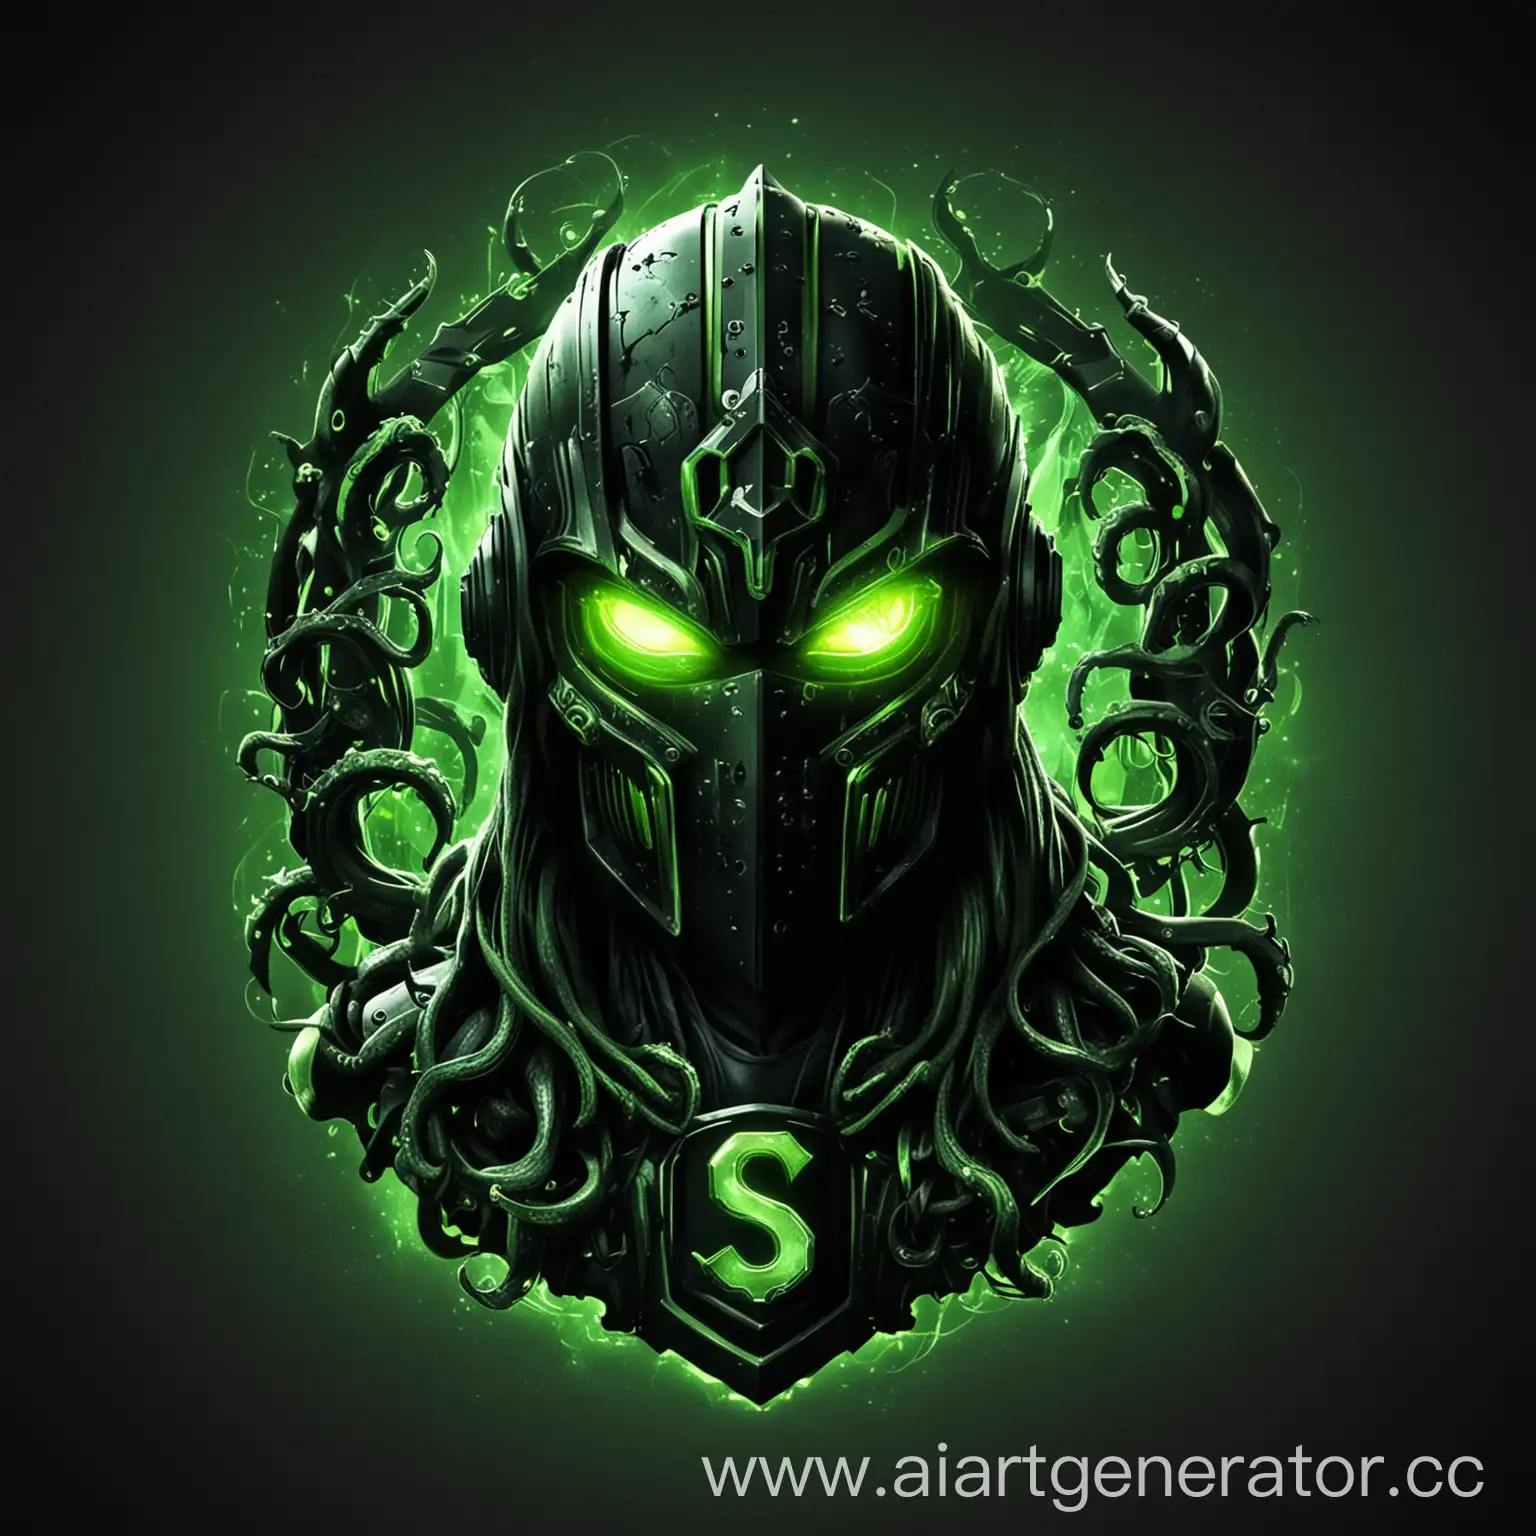 логотип, векторная графика, ультра качество, скверна, киберспорт, чёрный цвет, зелёный цвет, зелёное свечение, рыцарский шлем, щупальца,